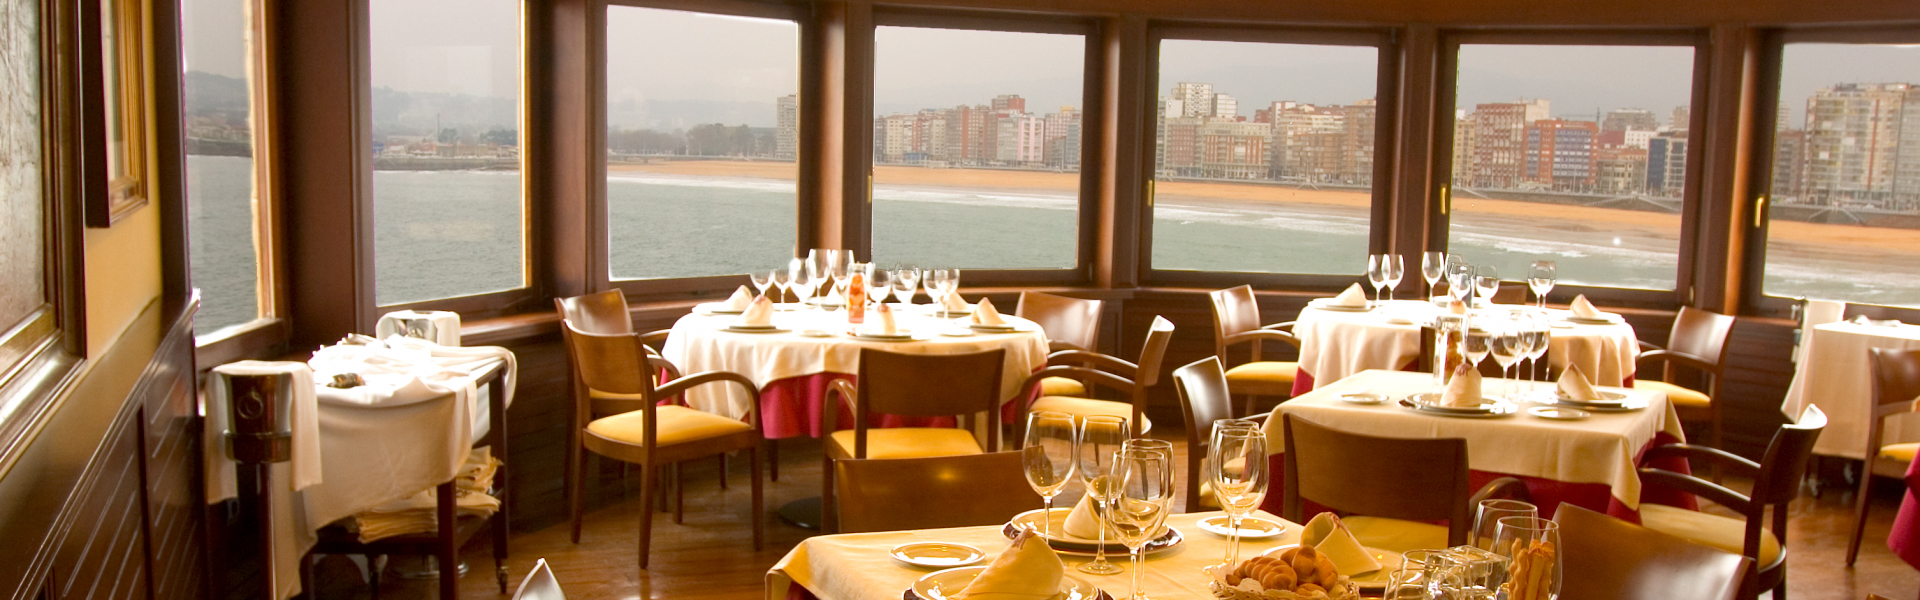 Restaurantes románticos en Gijón